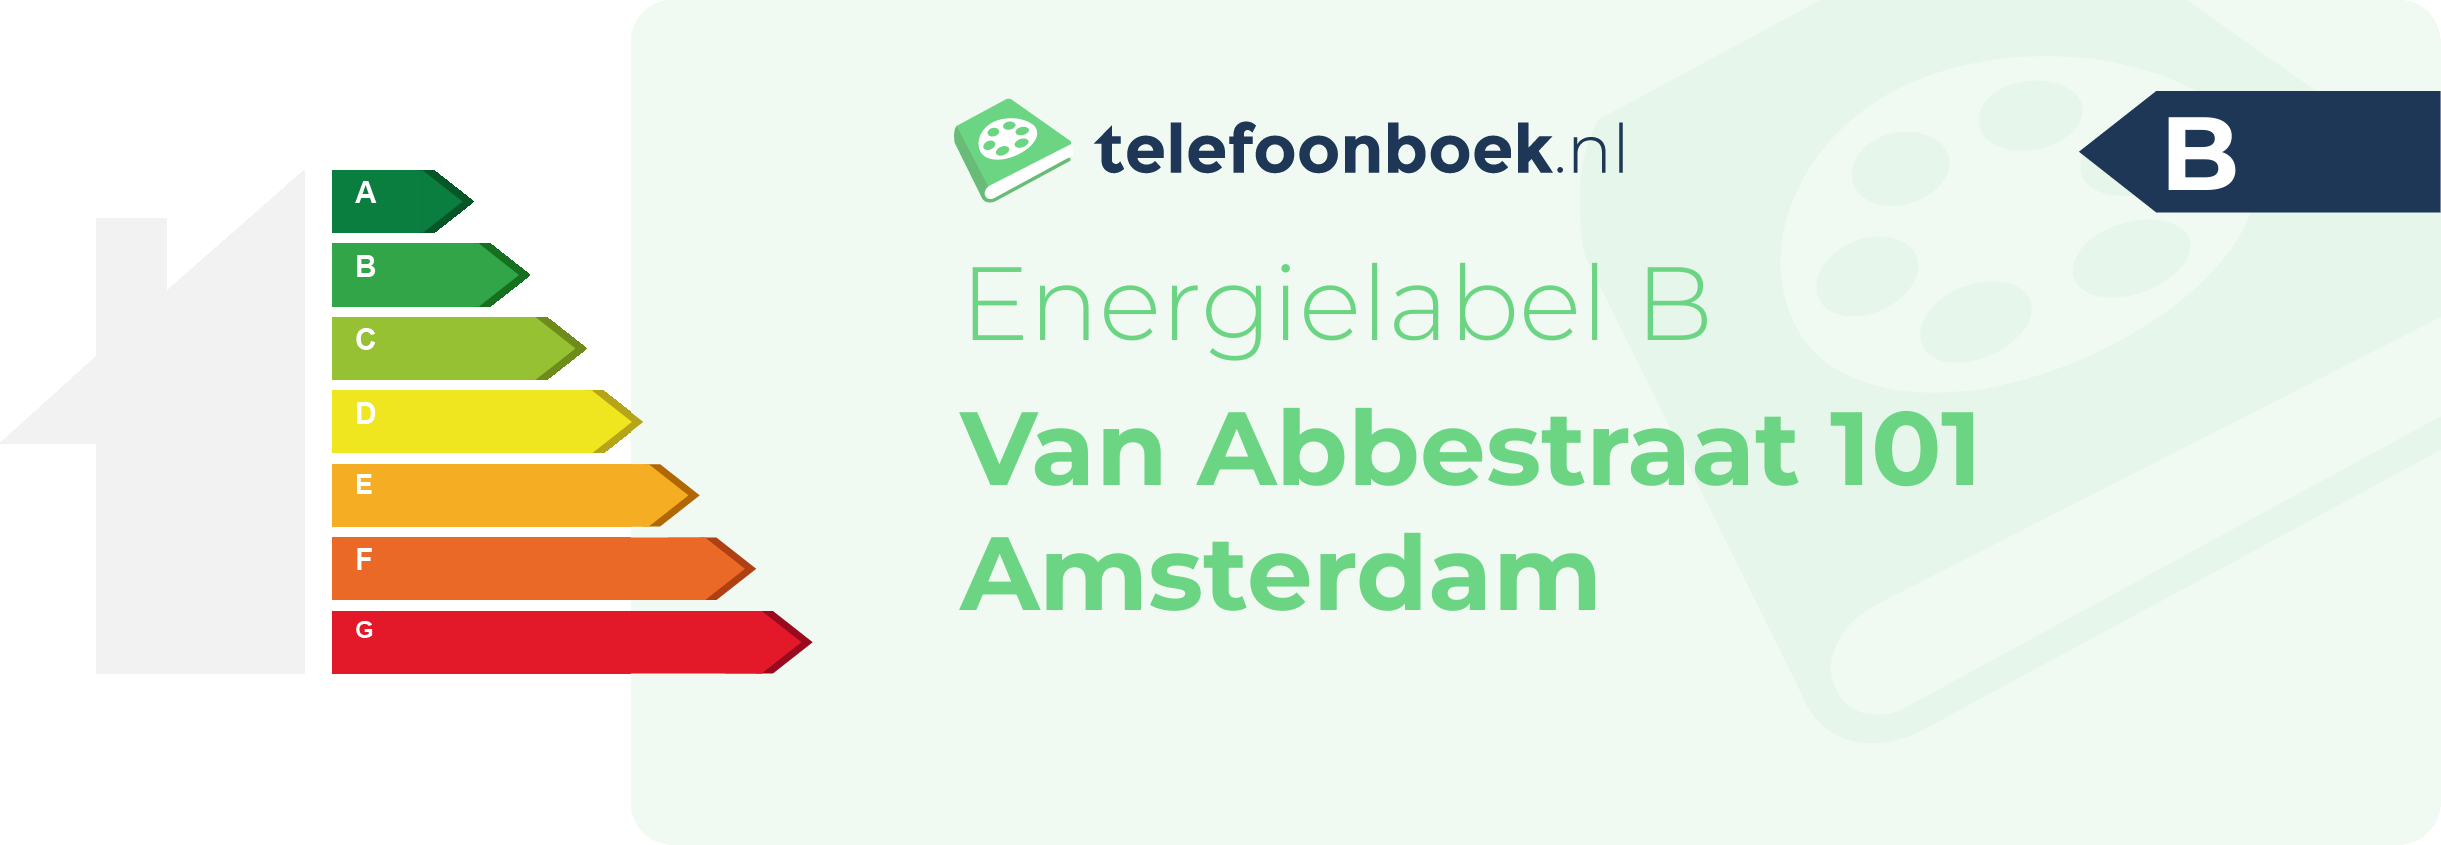 Energielabel Van Abbestraat 101 Amsterdam